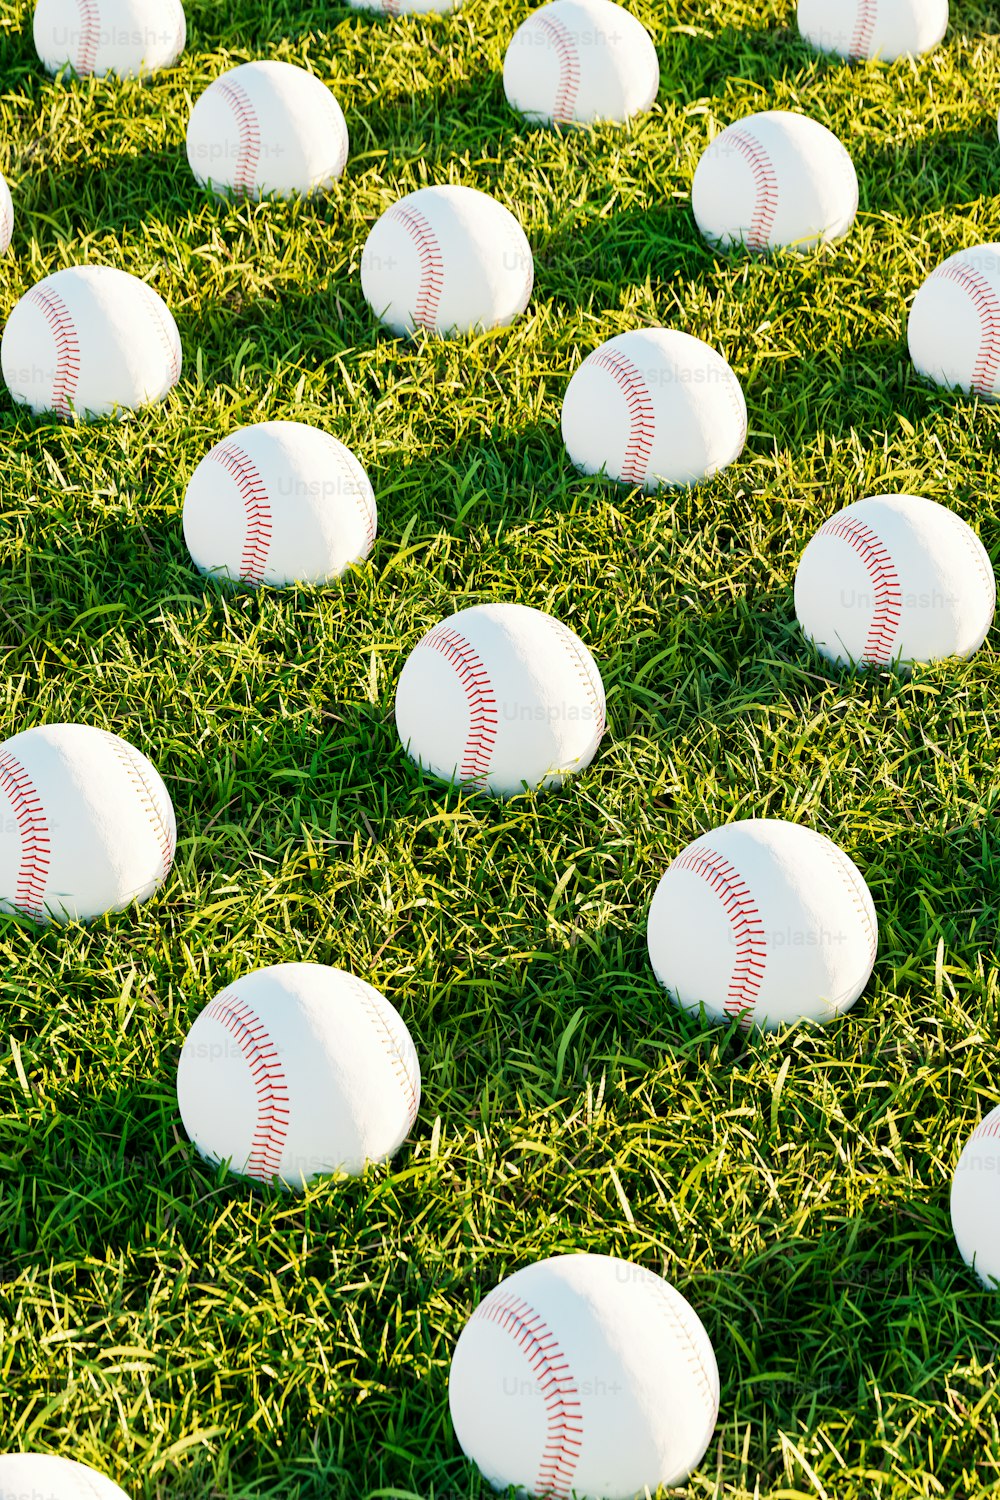 緑の芝生の上に横たわる白い野球ボールでいっぱいのフィールド